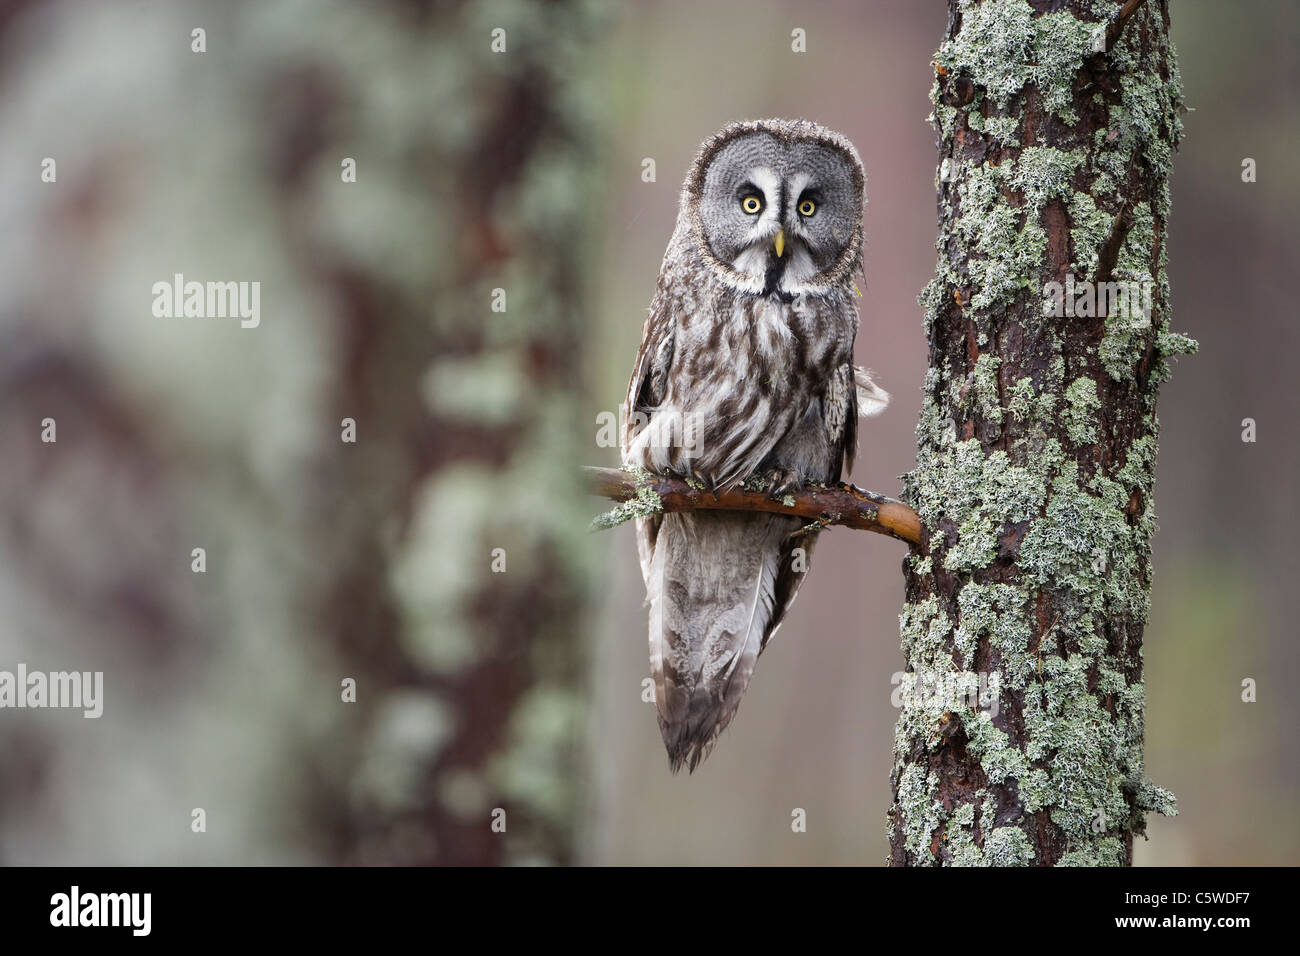 Chouette lapone, Laponie Owl (Strix nebulosa) perchées dans des conditions contrôlées (forêt de pins). Banque D'Images